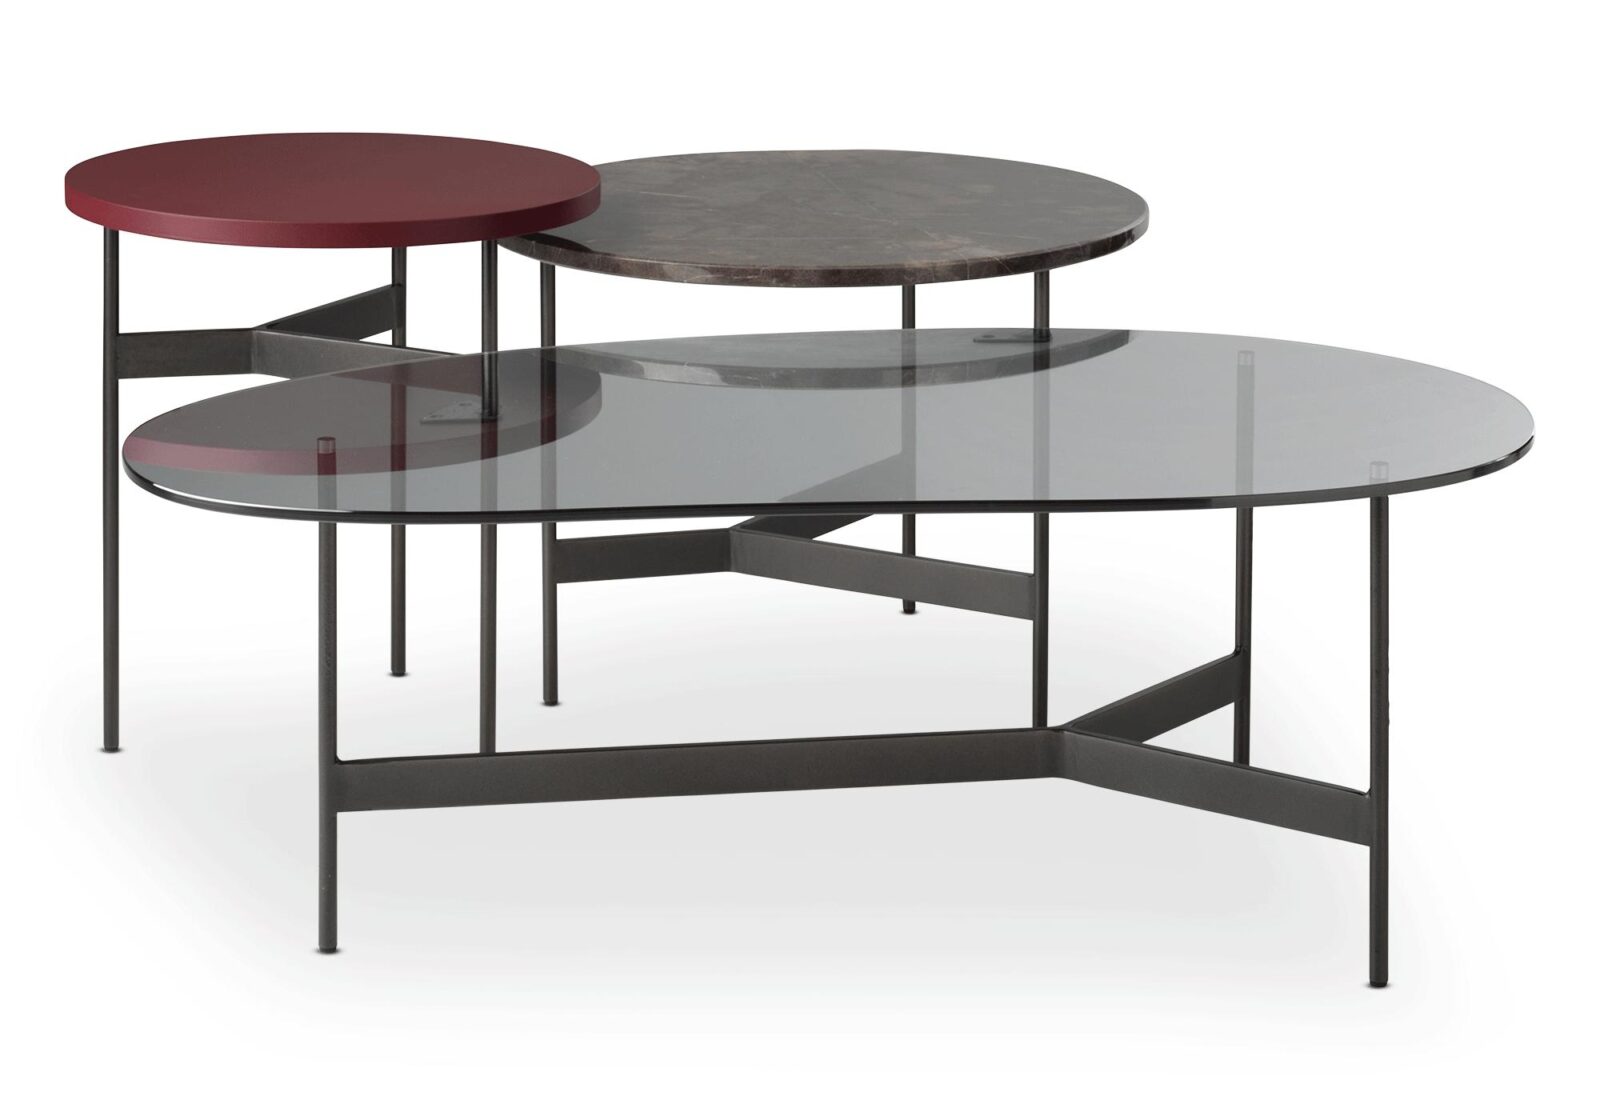 Satztisch Tampa mit 3 Tischen. Glas/ Marmor/ Lack bordeaux. B 108 T 61 H 40 5 cm. Erhältlich bei Möbel Gallati.